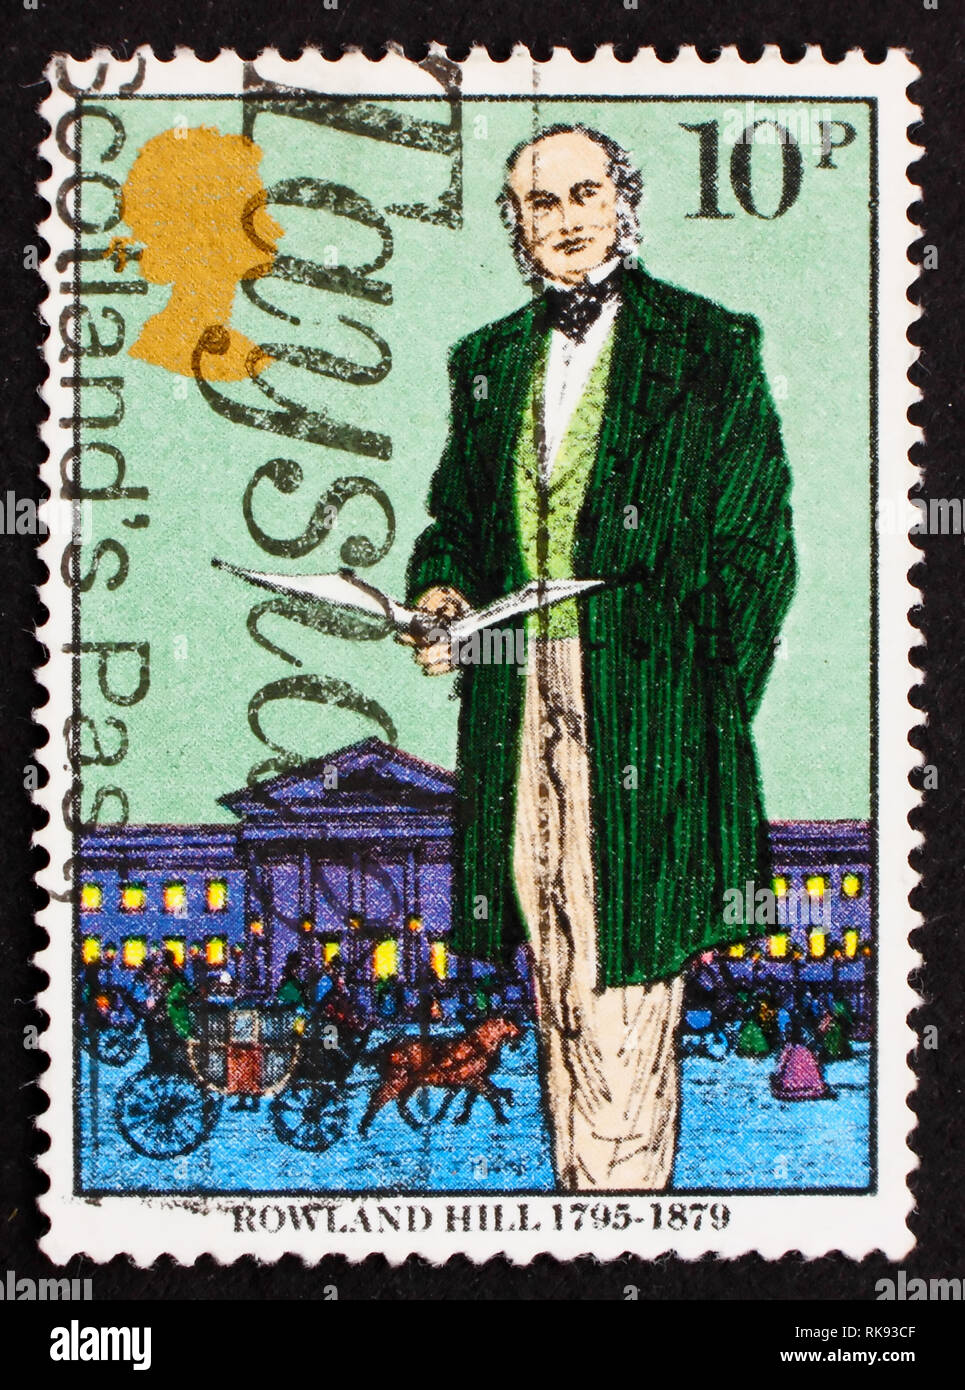 Gran Bretaña: circa 1979: un sello impreso en Gran Bretaña muestra Sir Rowland Hill, el originador de penny franqueo, reformador del sistema postal, c Foto de stock